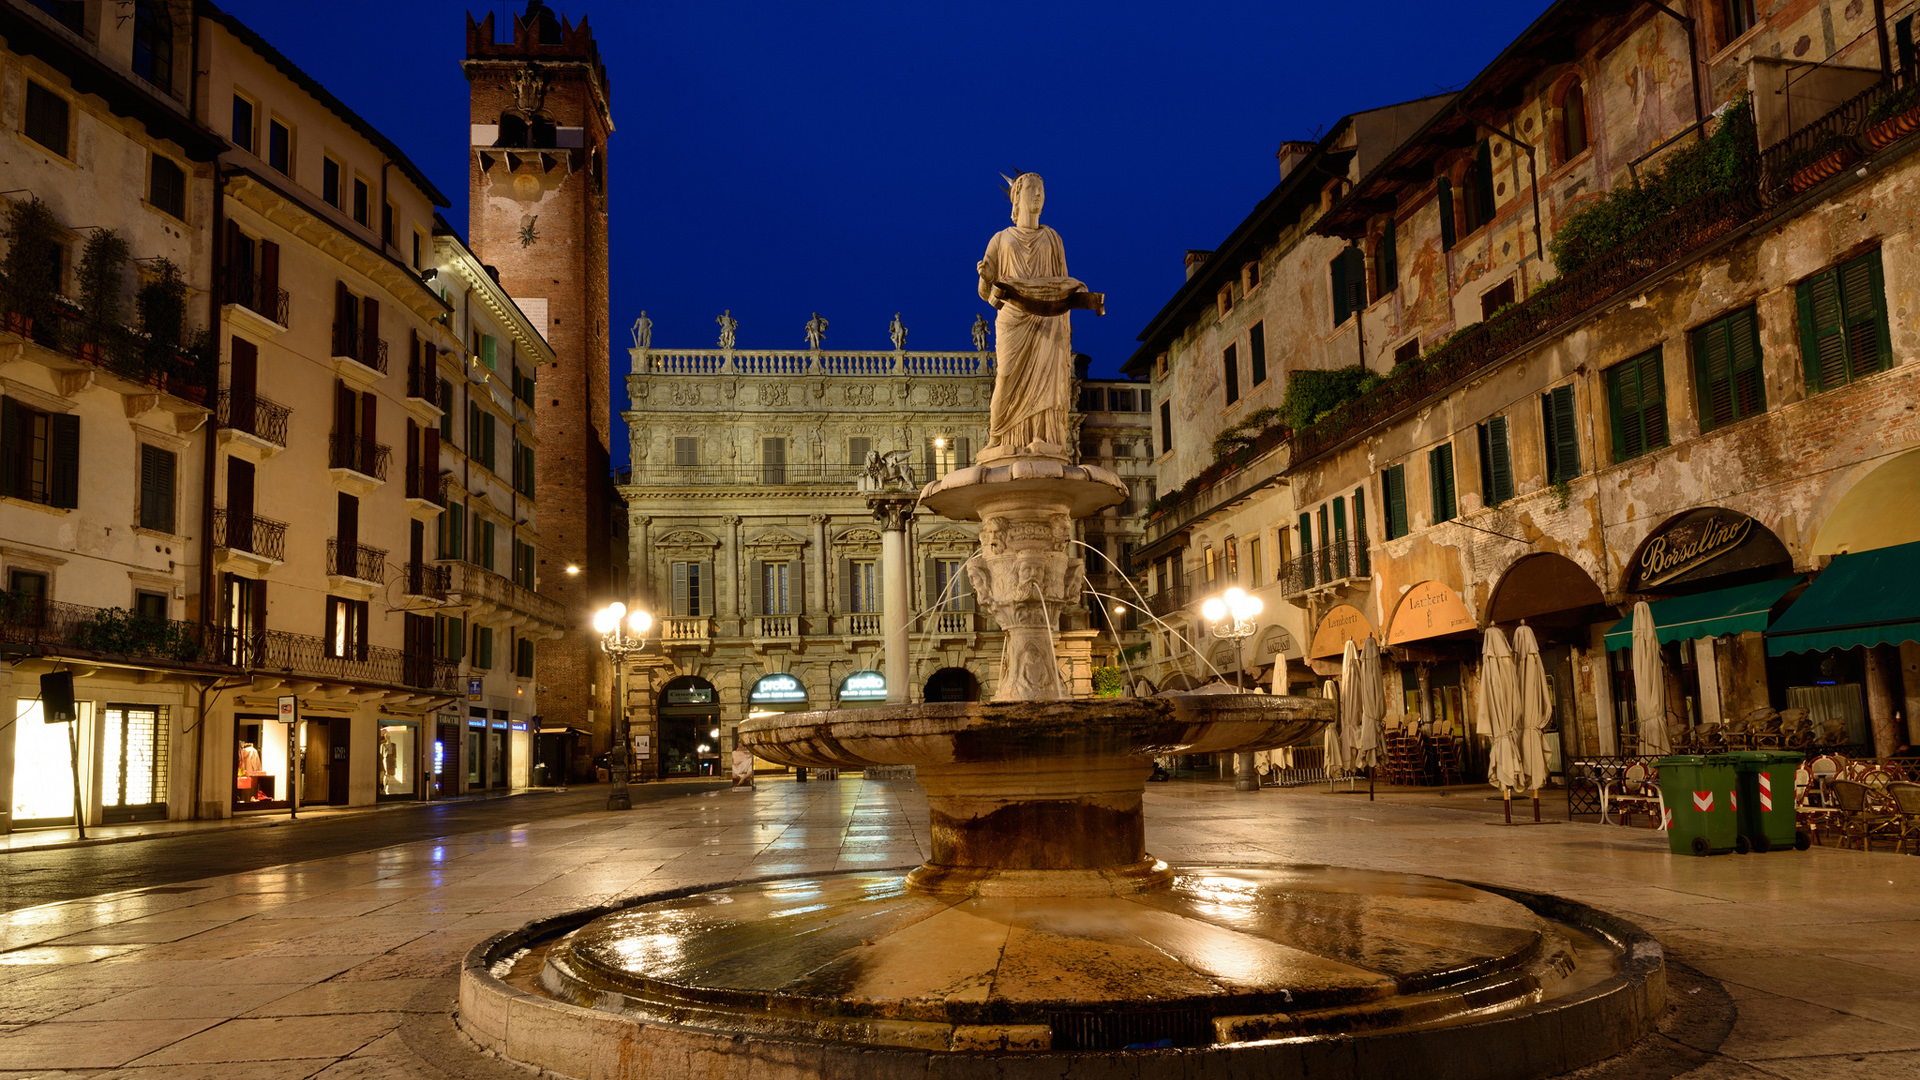 夜晚天空,意大利维罗纳广场喷泉风景桌面壁纸